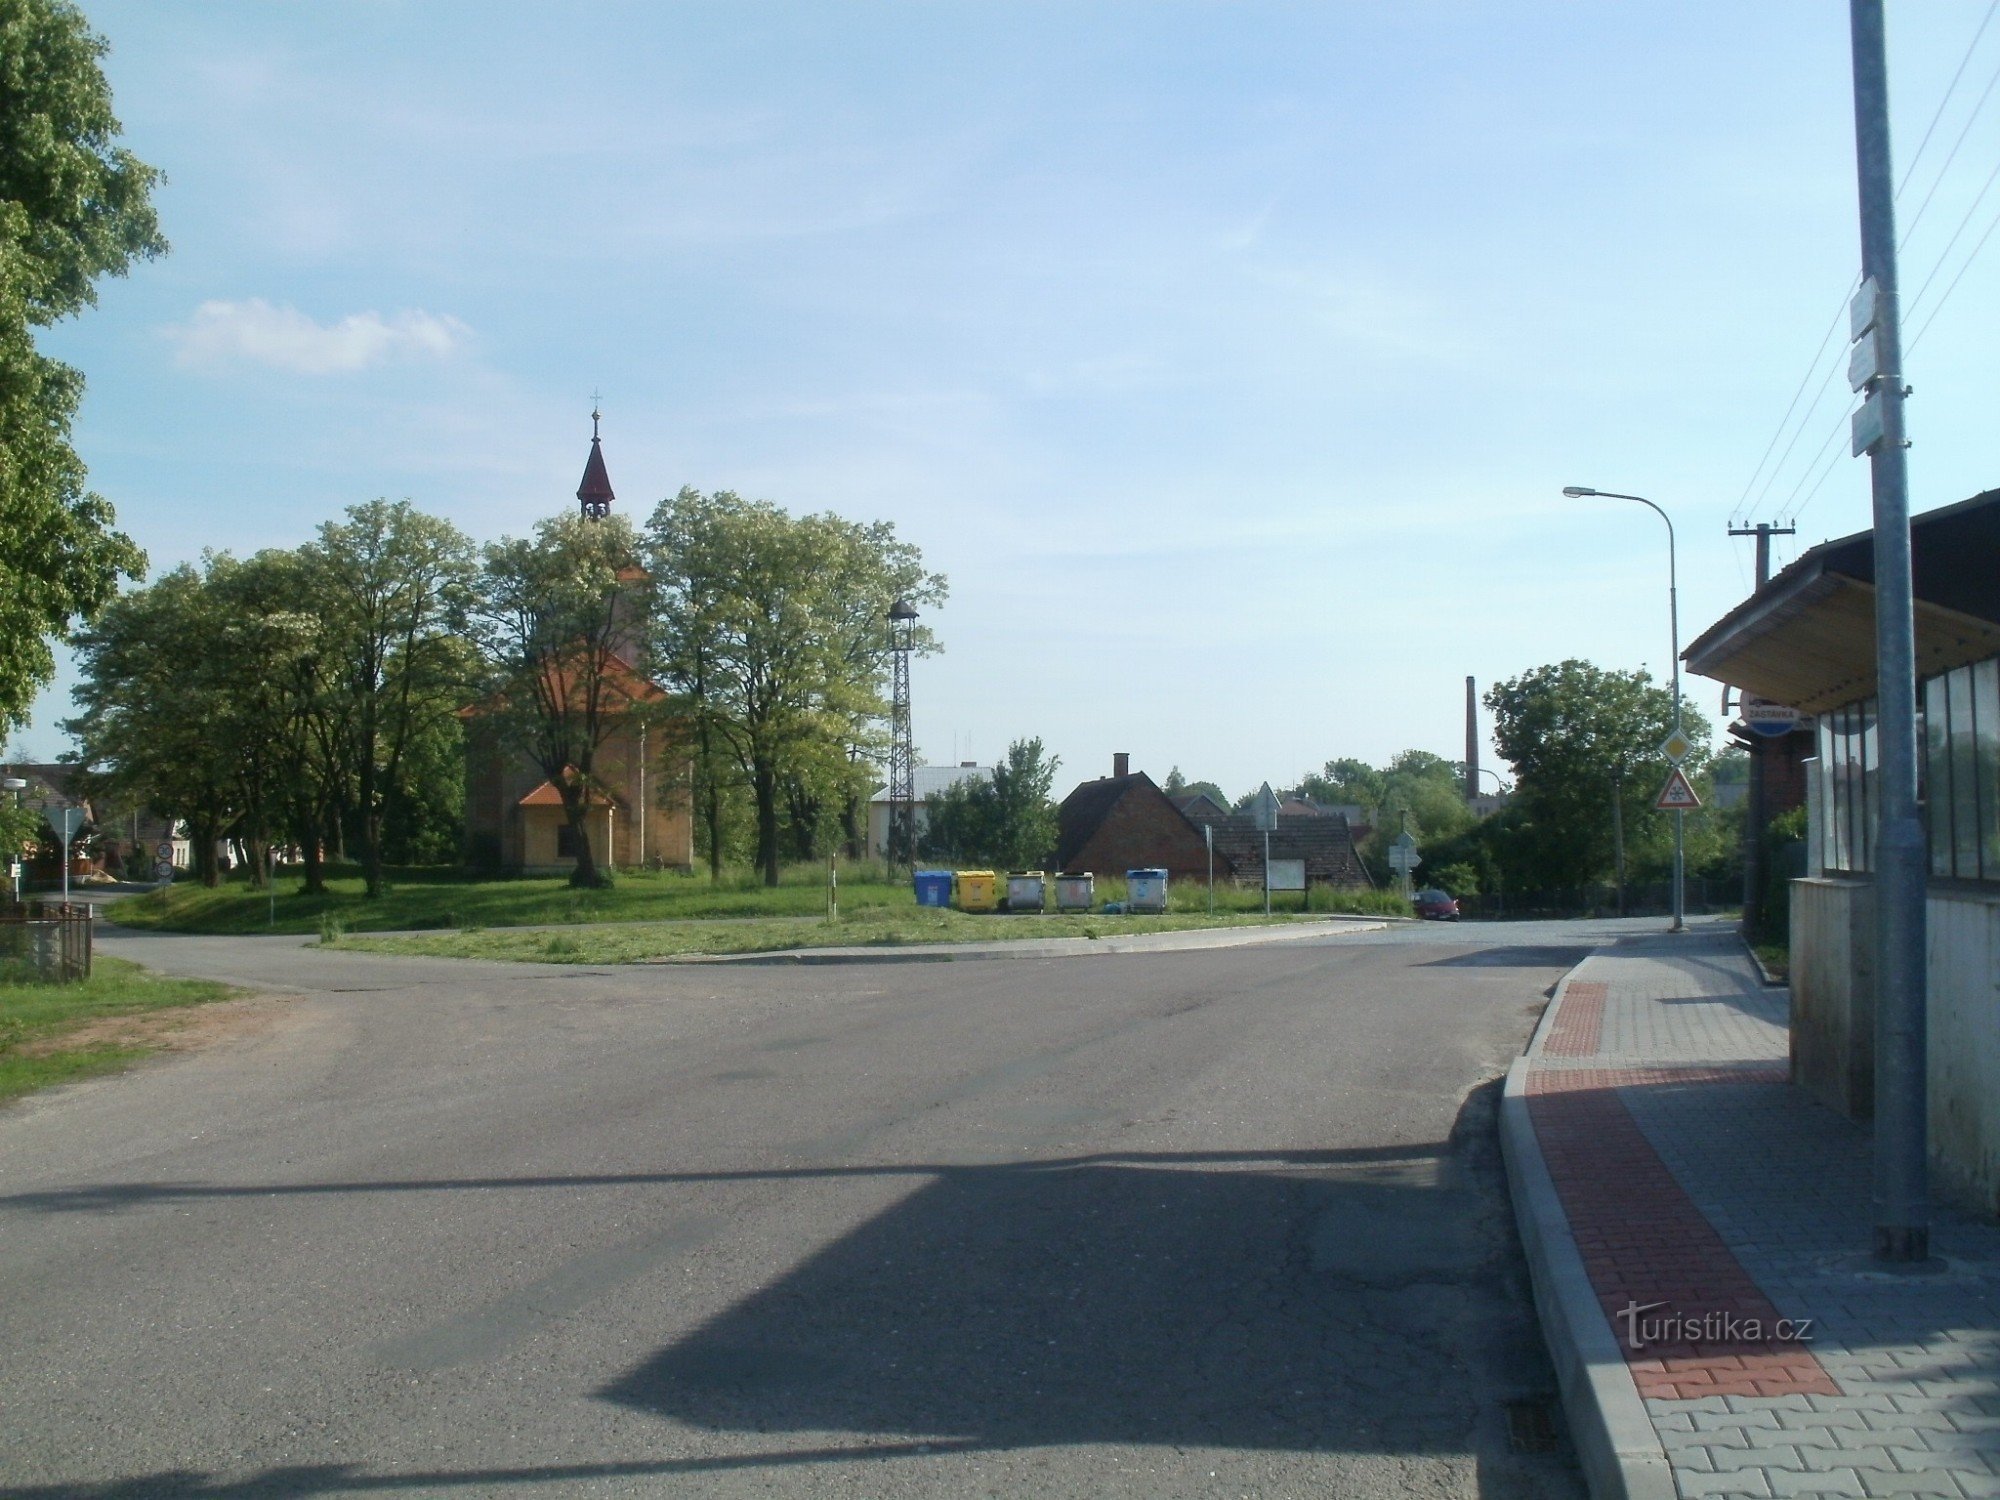 Jeníkovice 的旅游十字路口